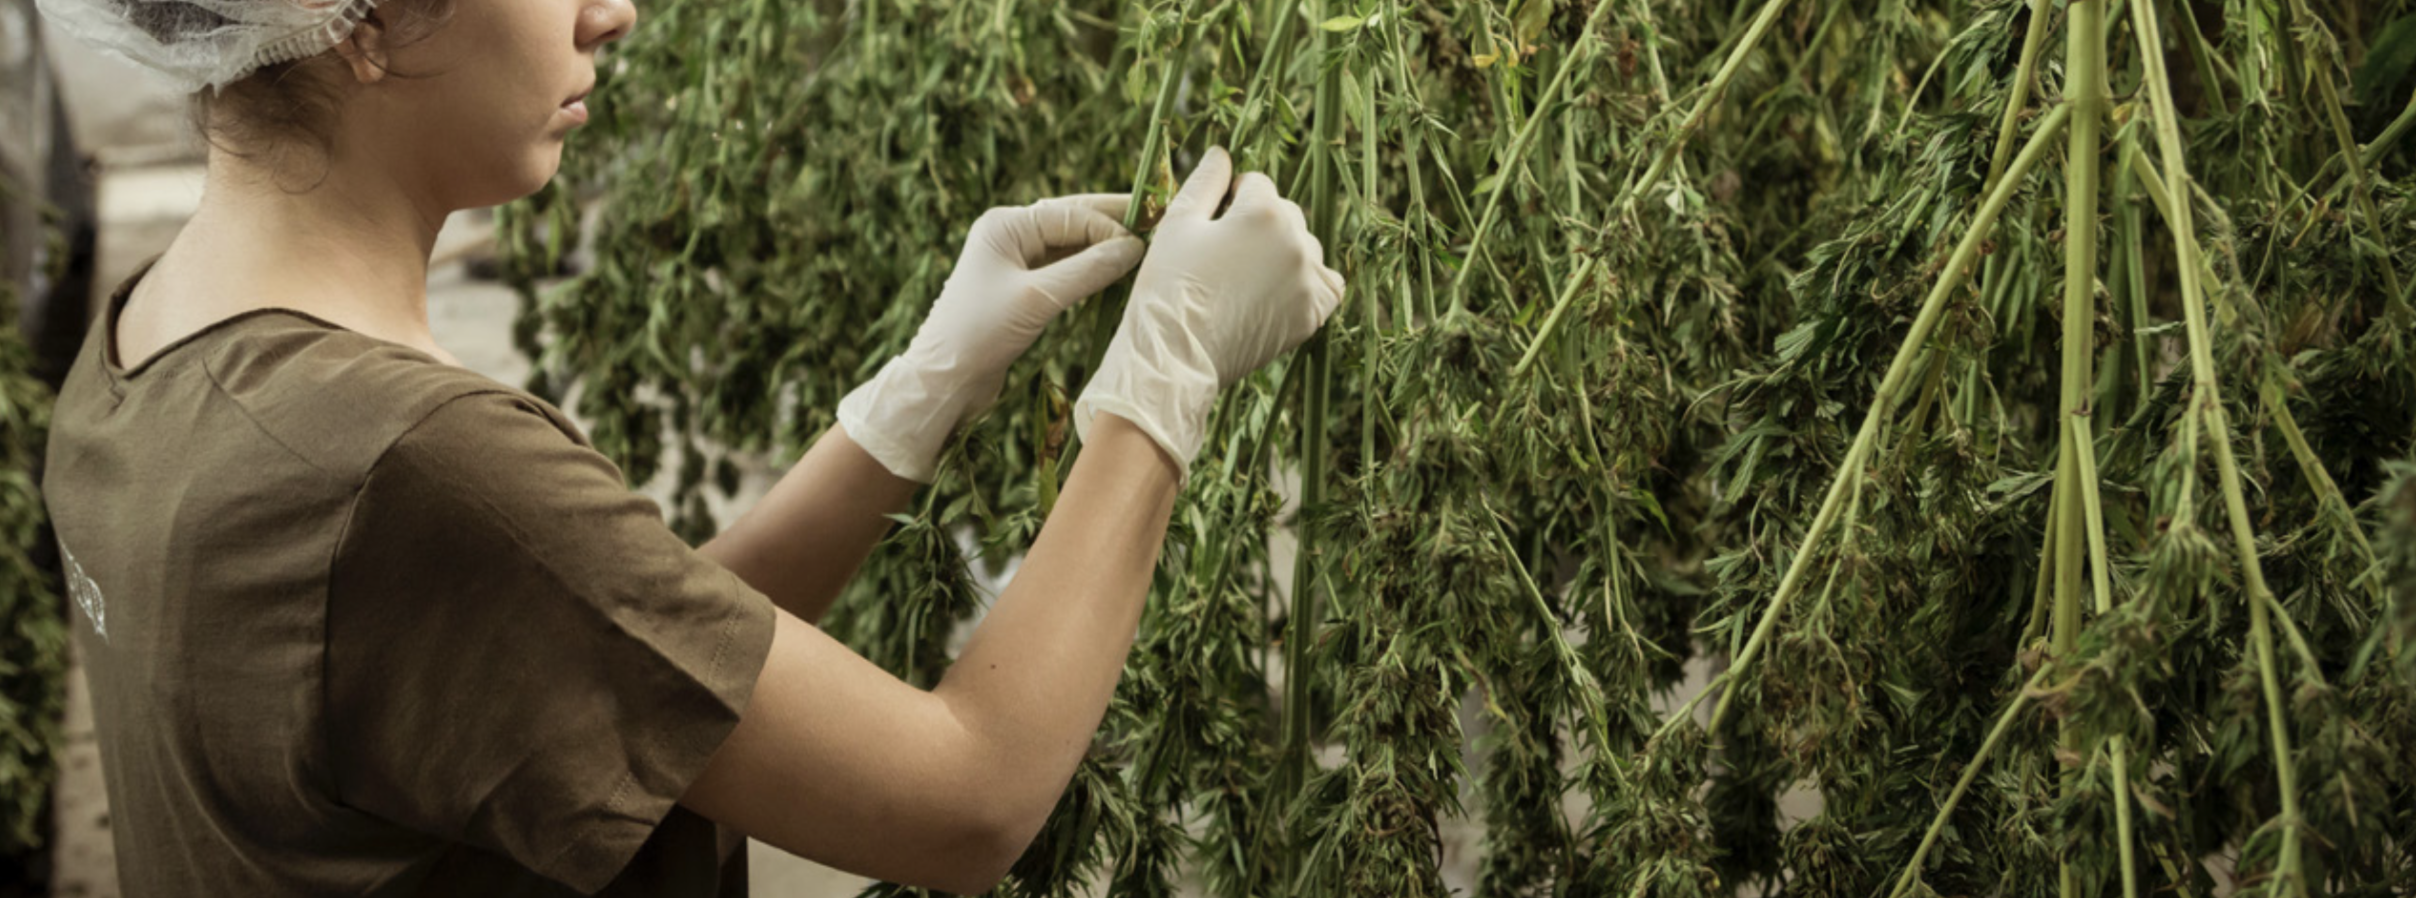 creación de empleo en la industria de cannabis